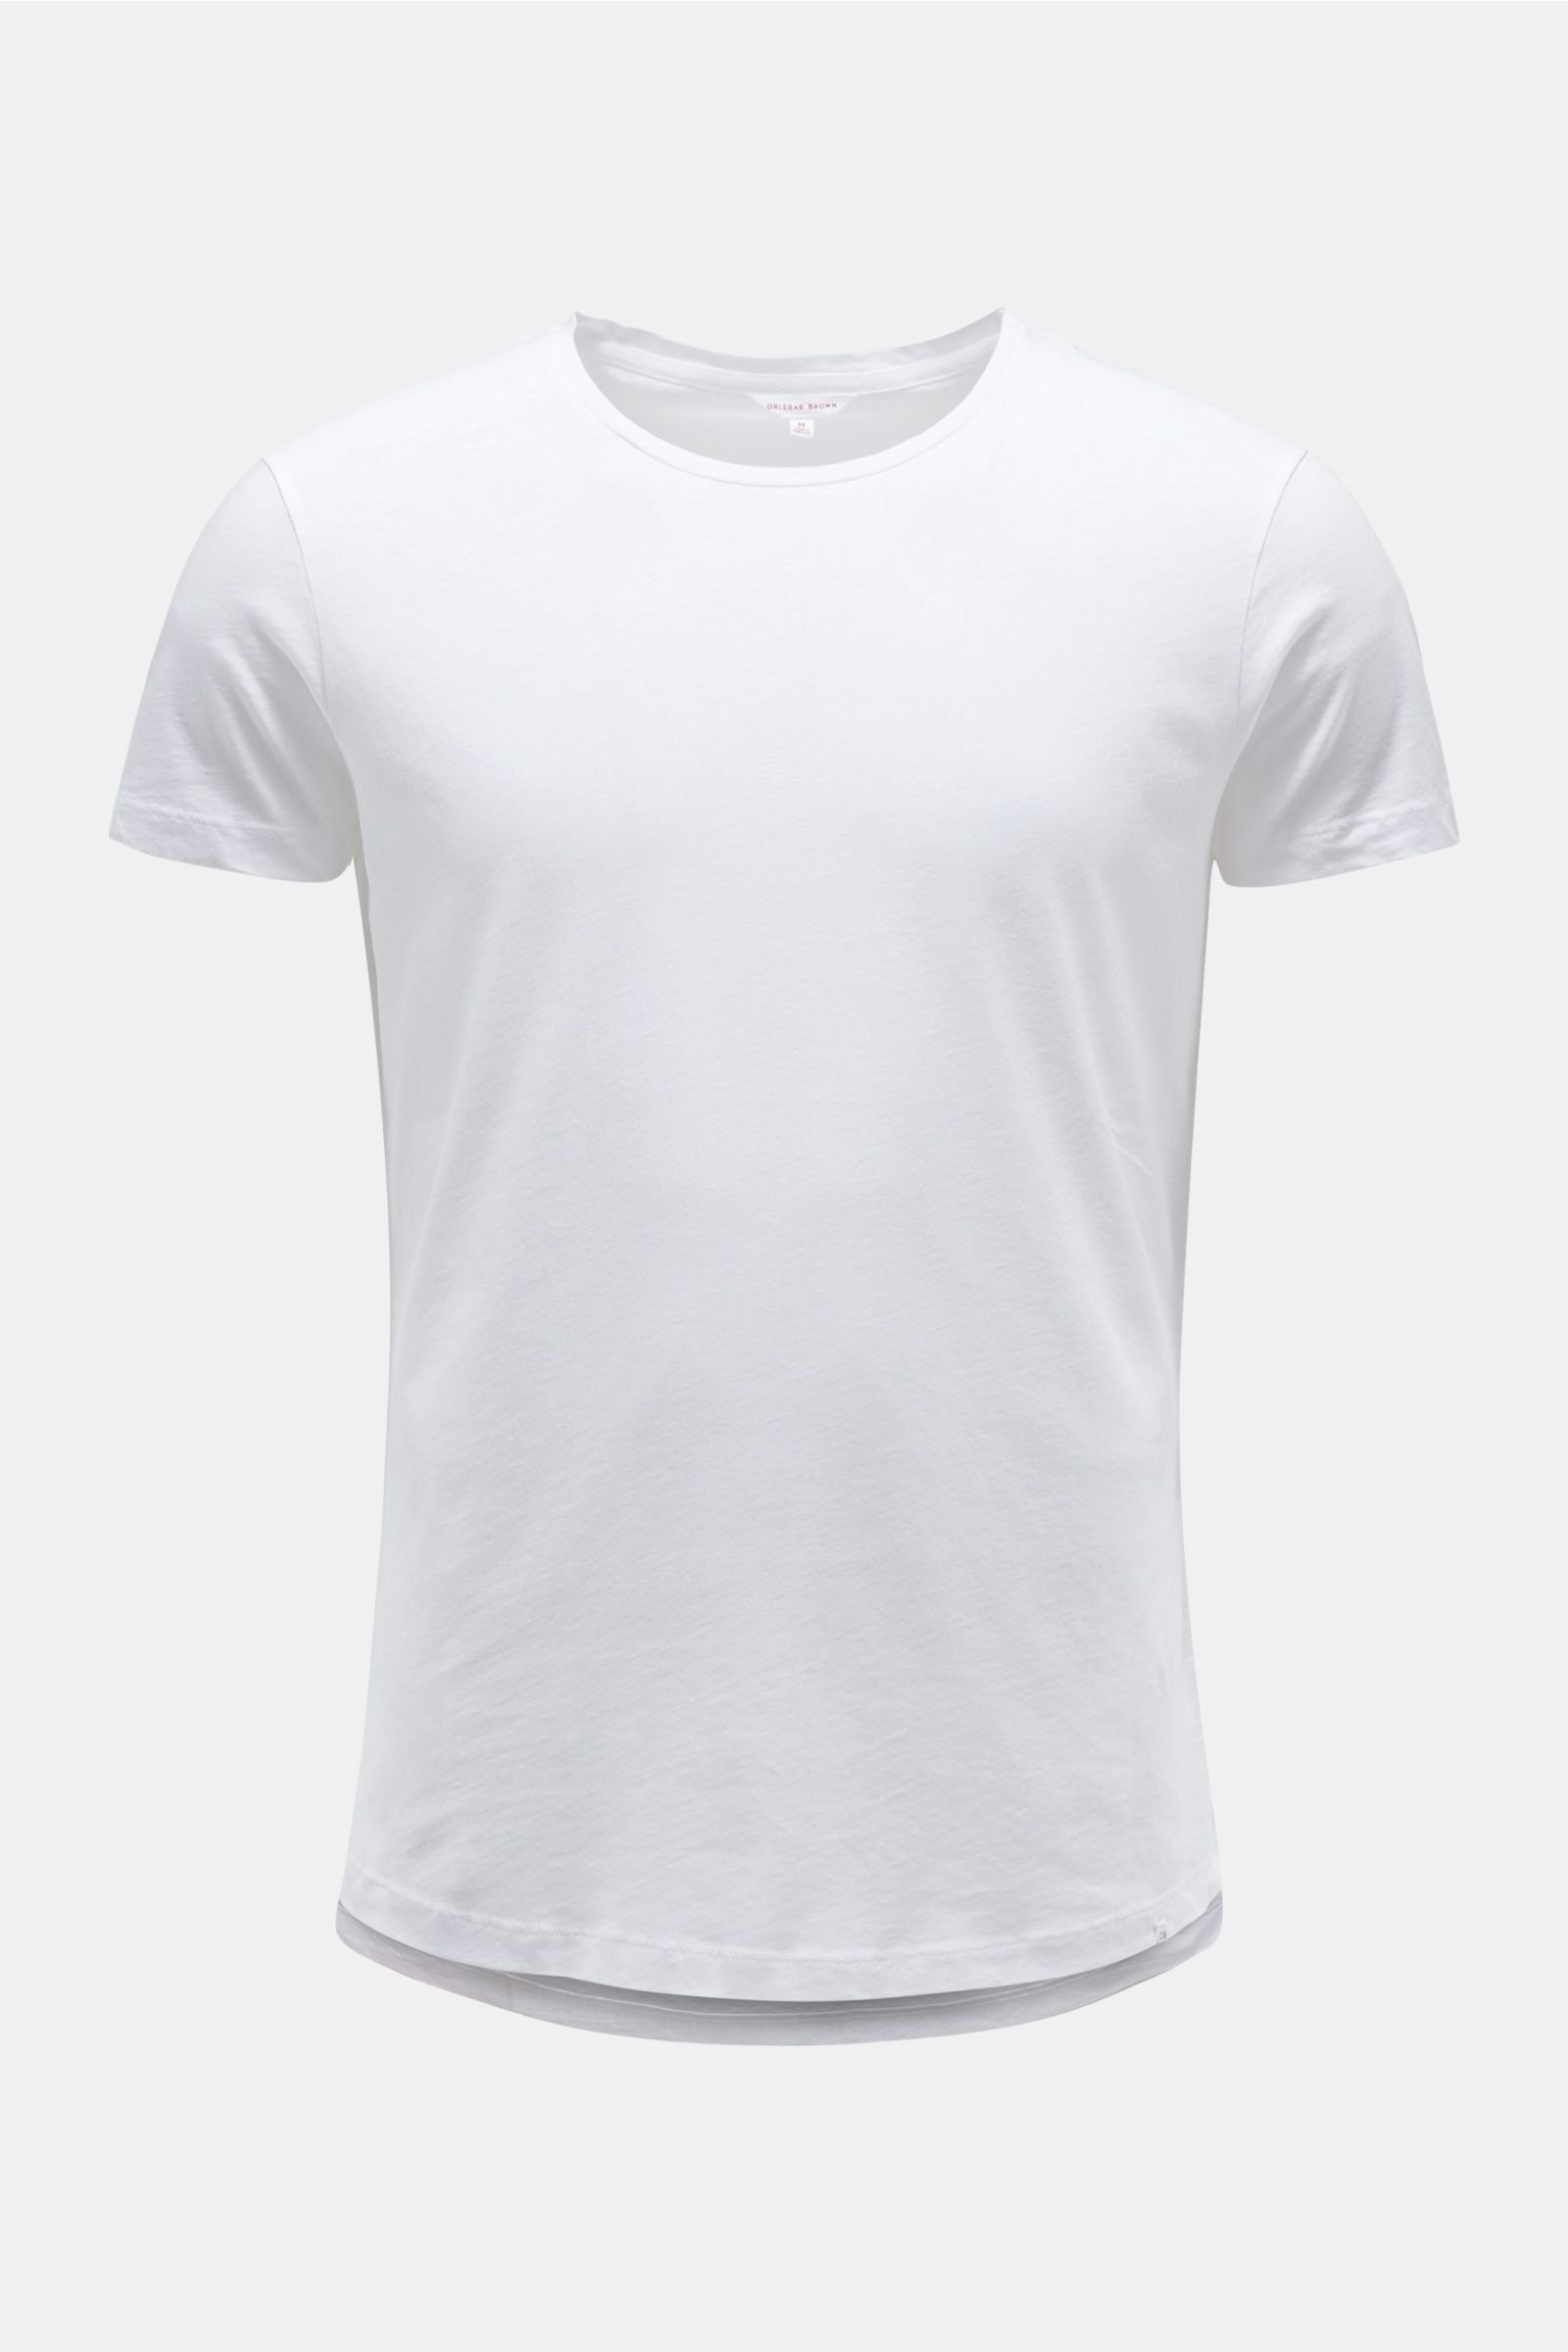 Crew neck T-shirt 'OB-T' white